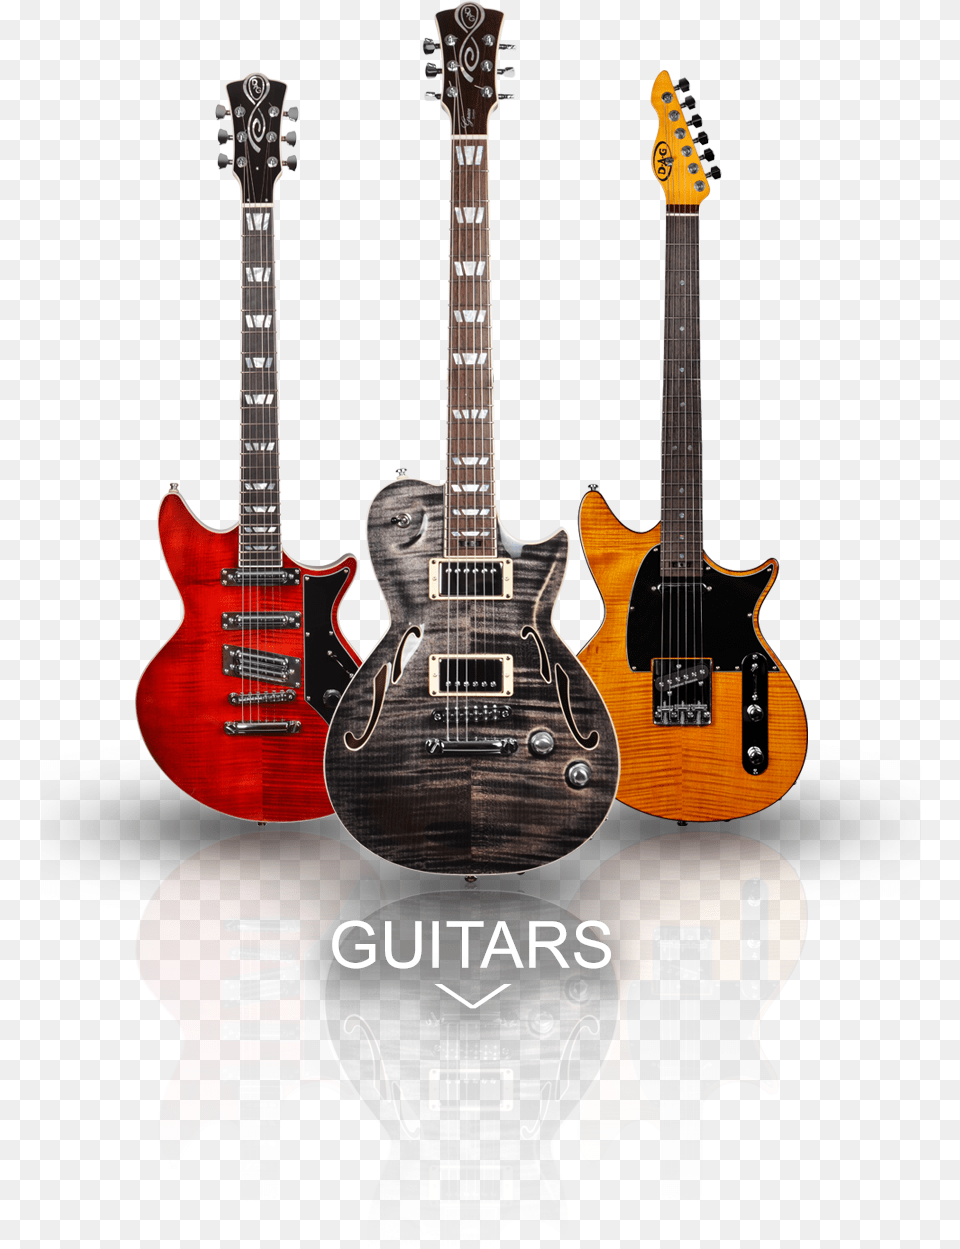 Catalogue Universum Guitars, Electric Guitar, Guitar, Musical Instrument, Bass Guitar Png Image